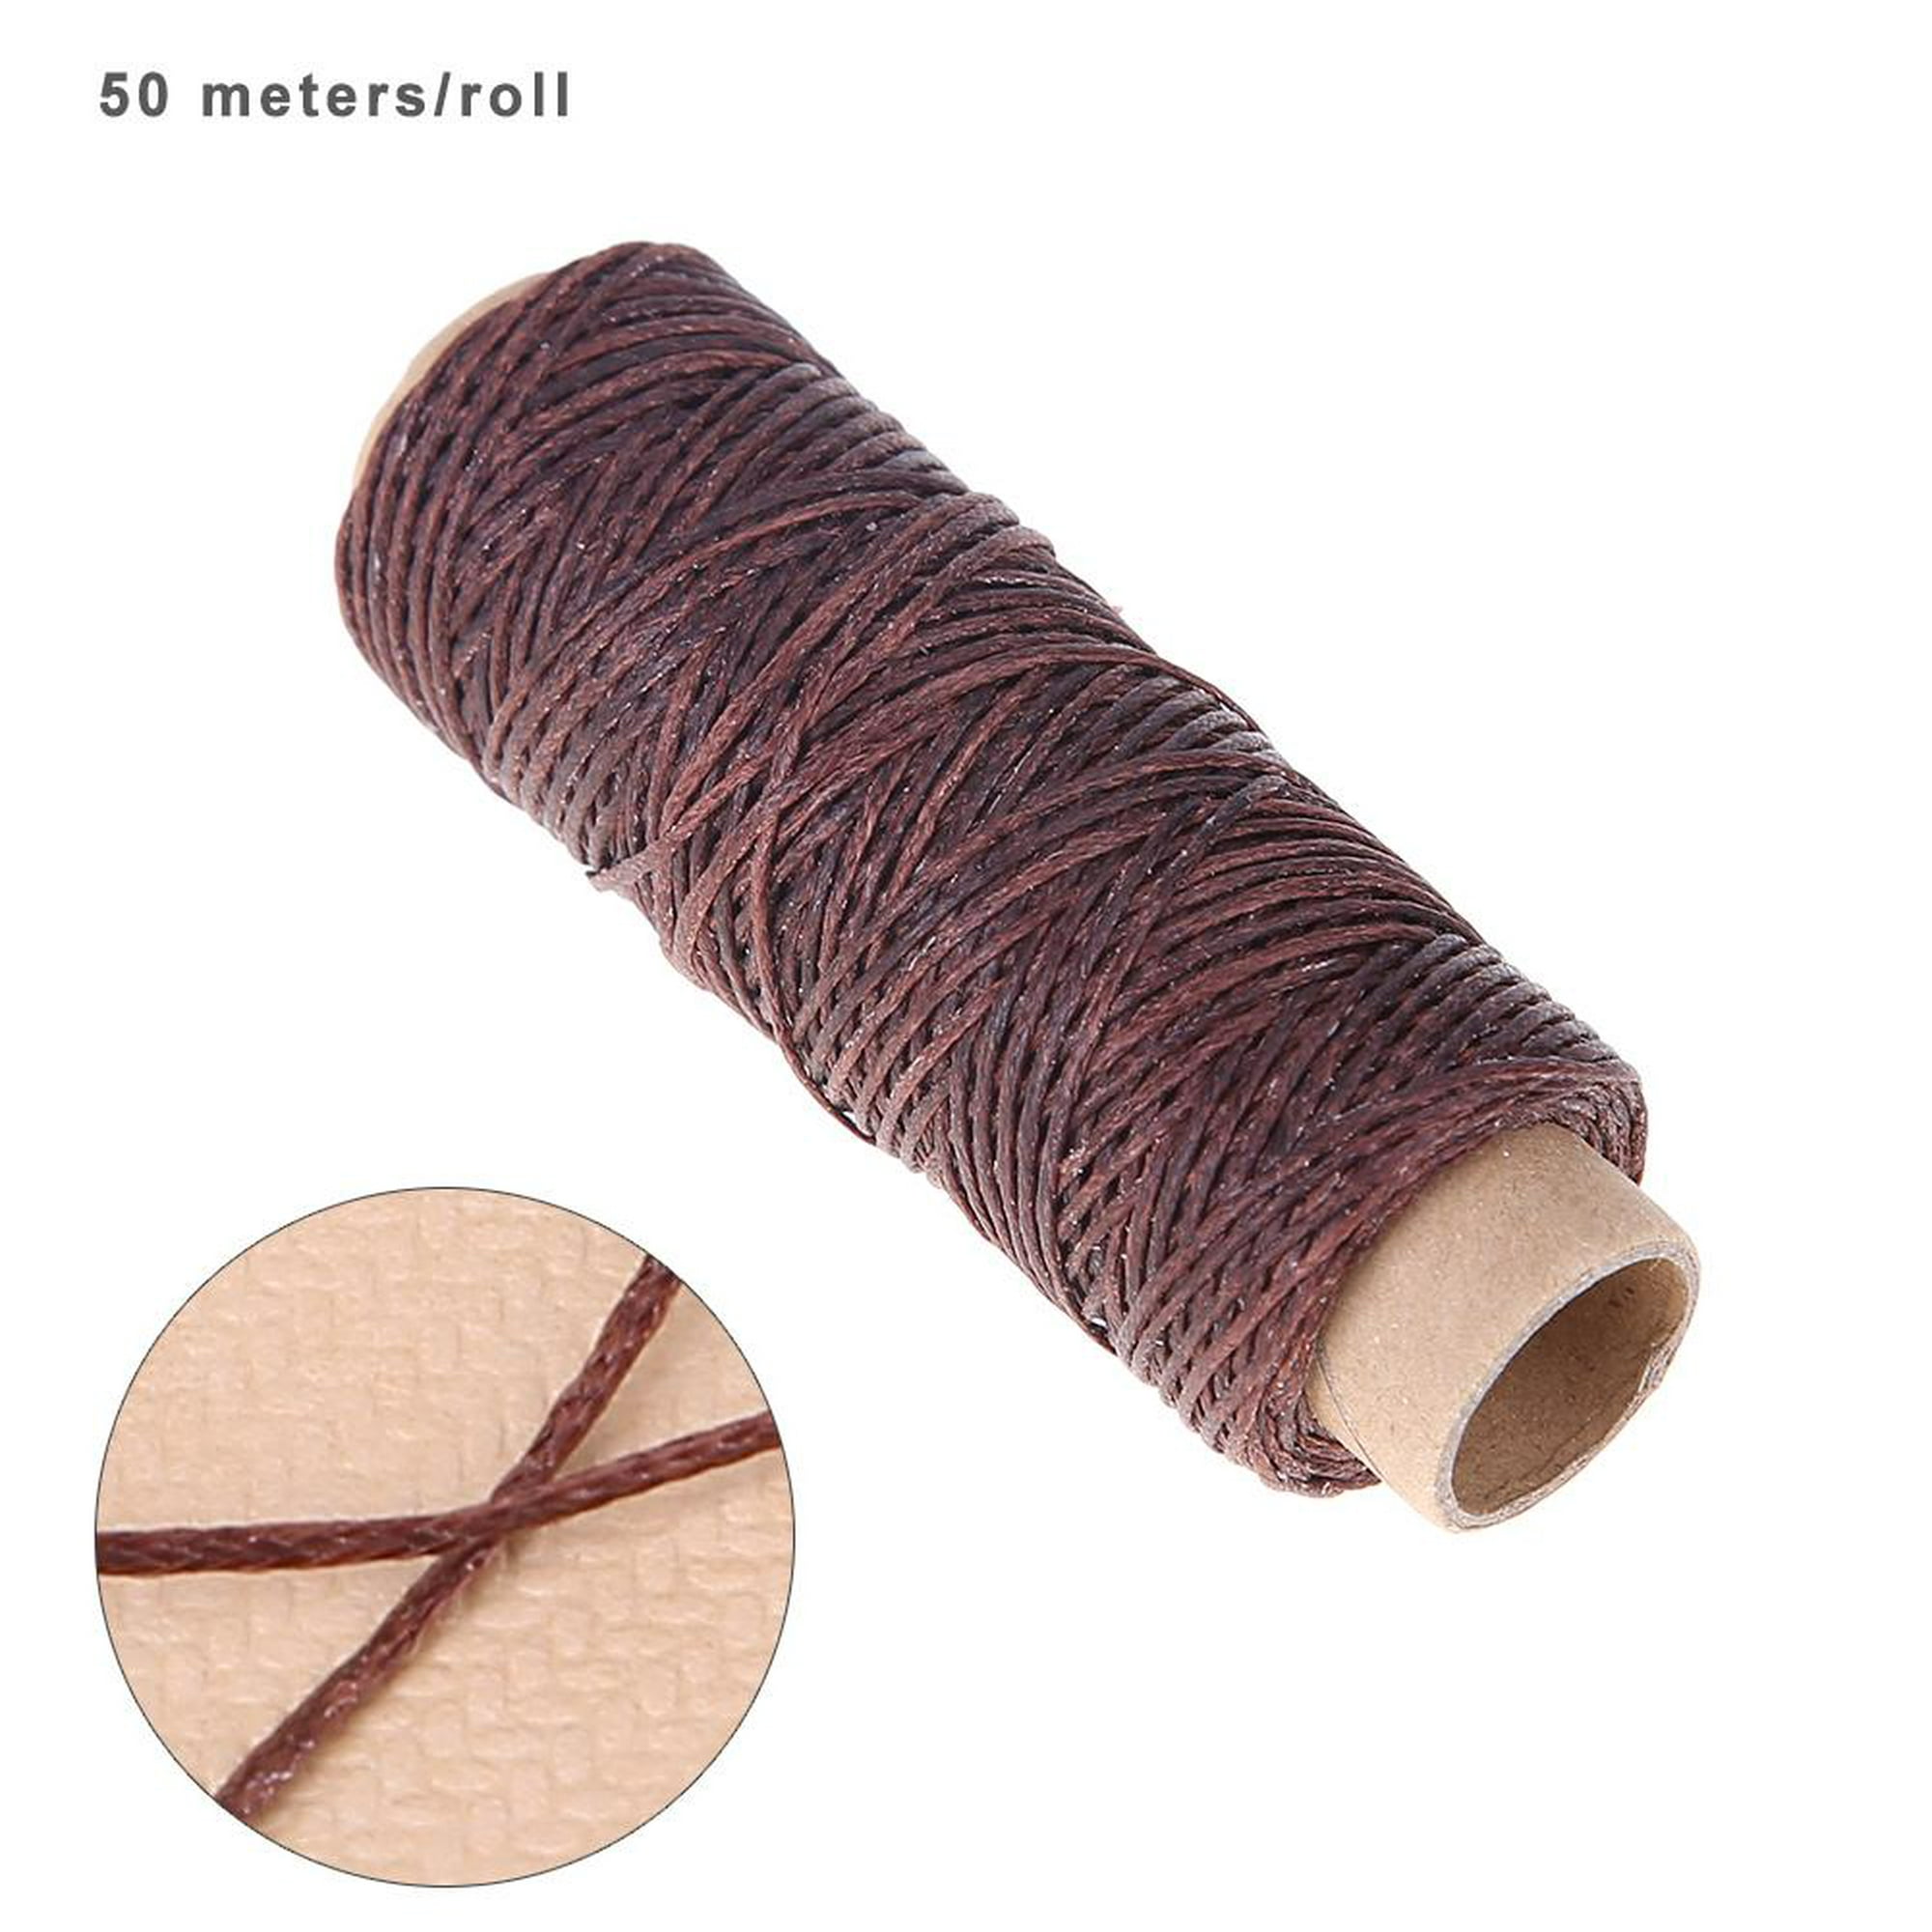 8 colores hilo encerado 150D cuero costura cera hilo cordón para cuero  artesanía costura bricolaje encuadernación mano coser pulseras artesanía